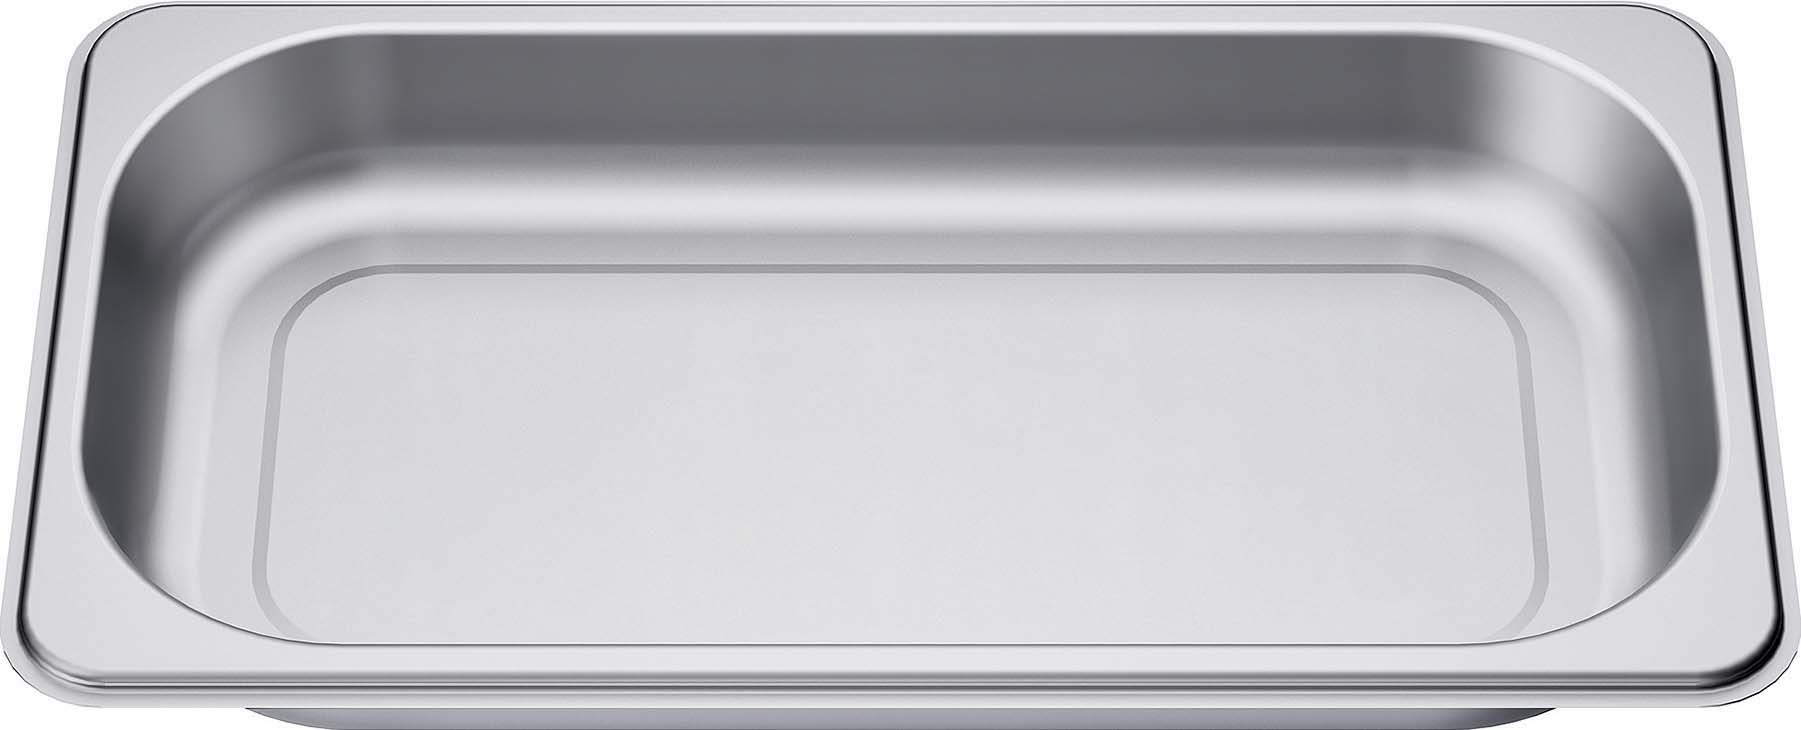 Dampfgarbehälter Edelstahl ungelocht für Größe S Siemens HZ36D613